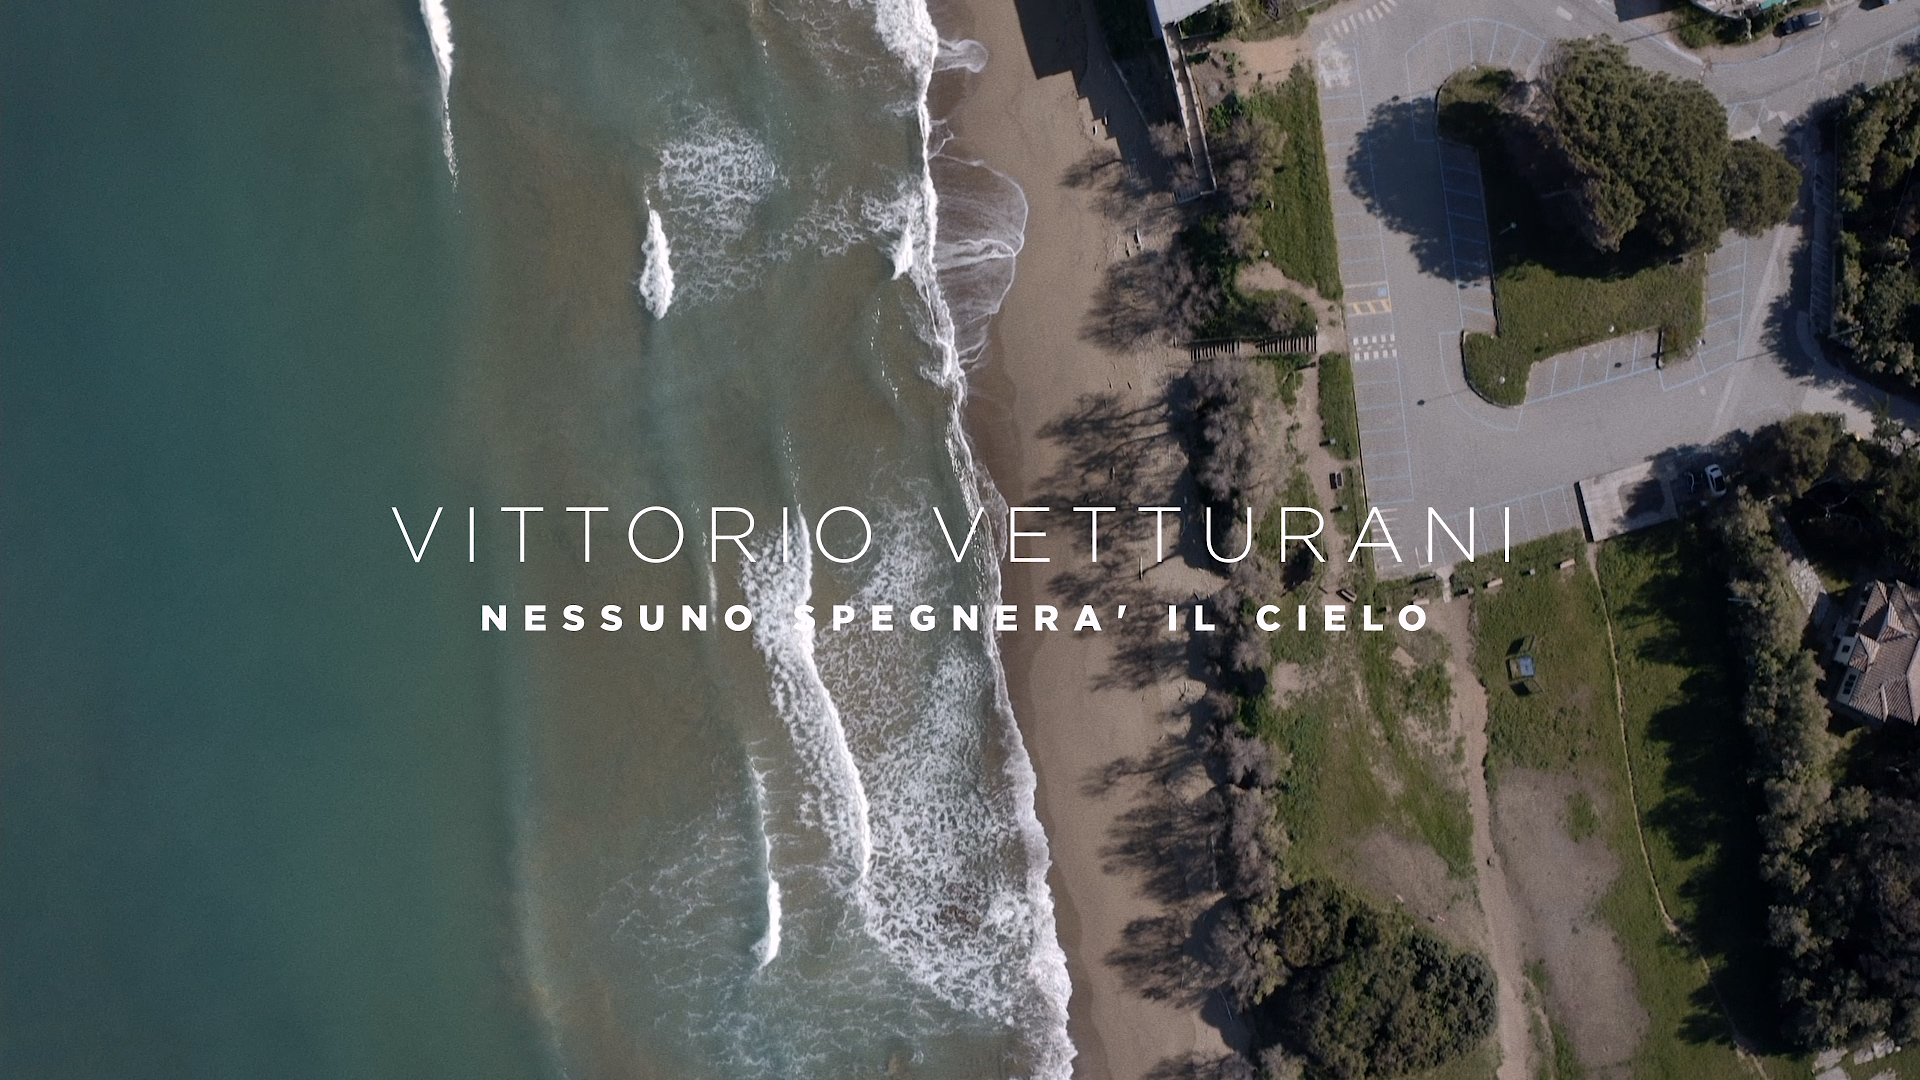 Vittorio Vetturani Presentazione singolo Nessuno spegnerà il cielo 4